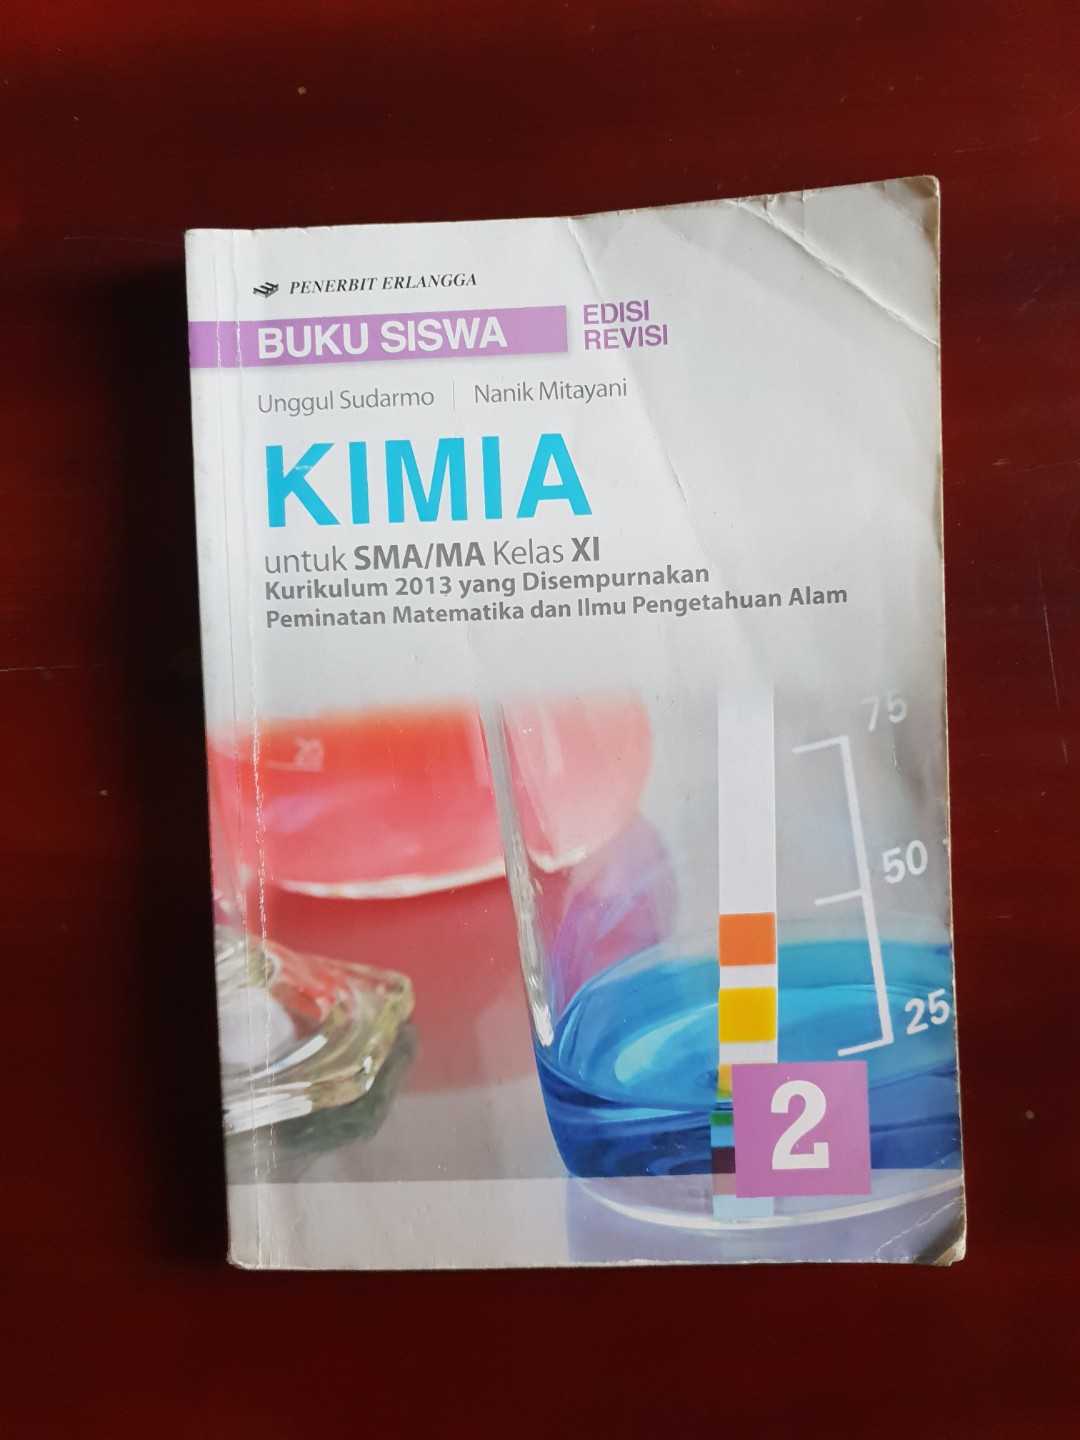 Buku Paket Kimia Kelas 11 Kurikulum 2013 Pdf Unggul Sudarmo – IlmuSosial.id